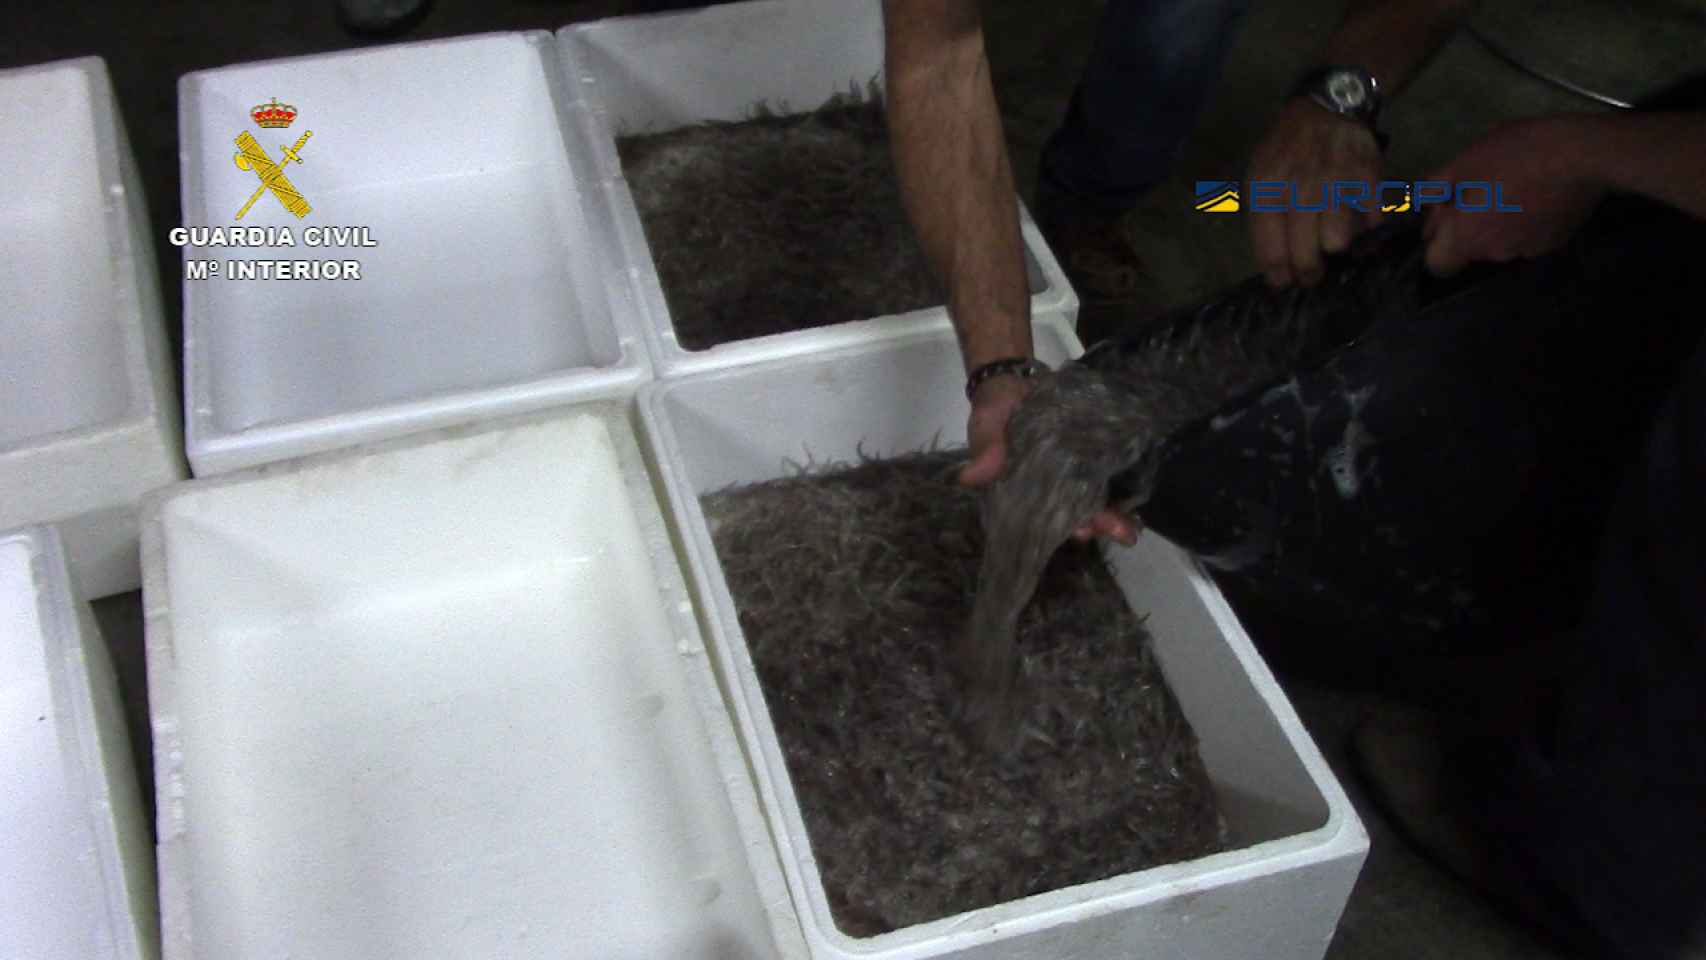 Las anguilas son transportadas en bolsas facturadas o en el equipaje de mano de las mulas.